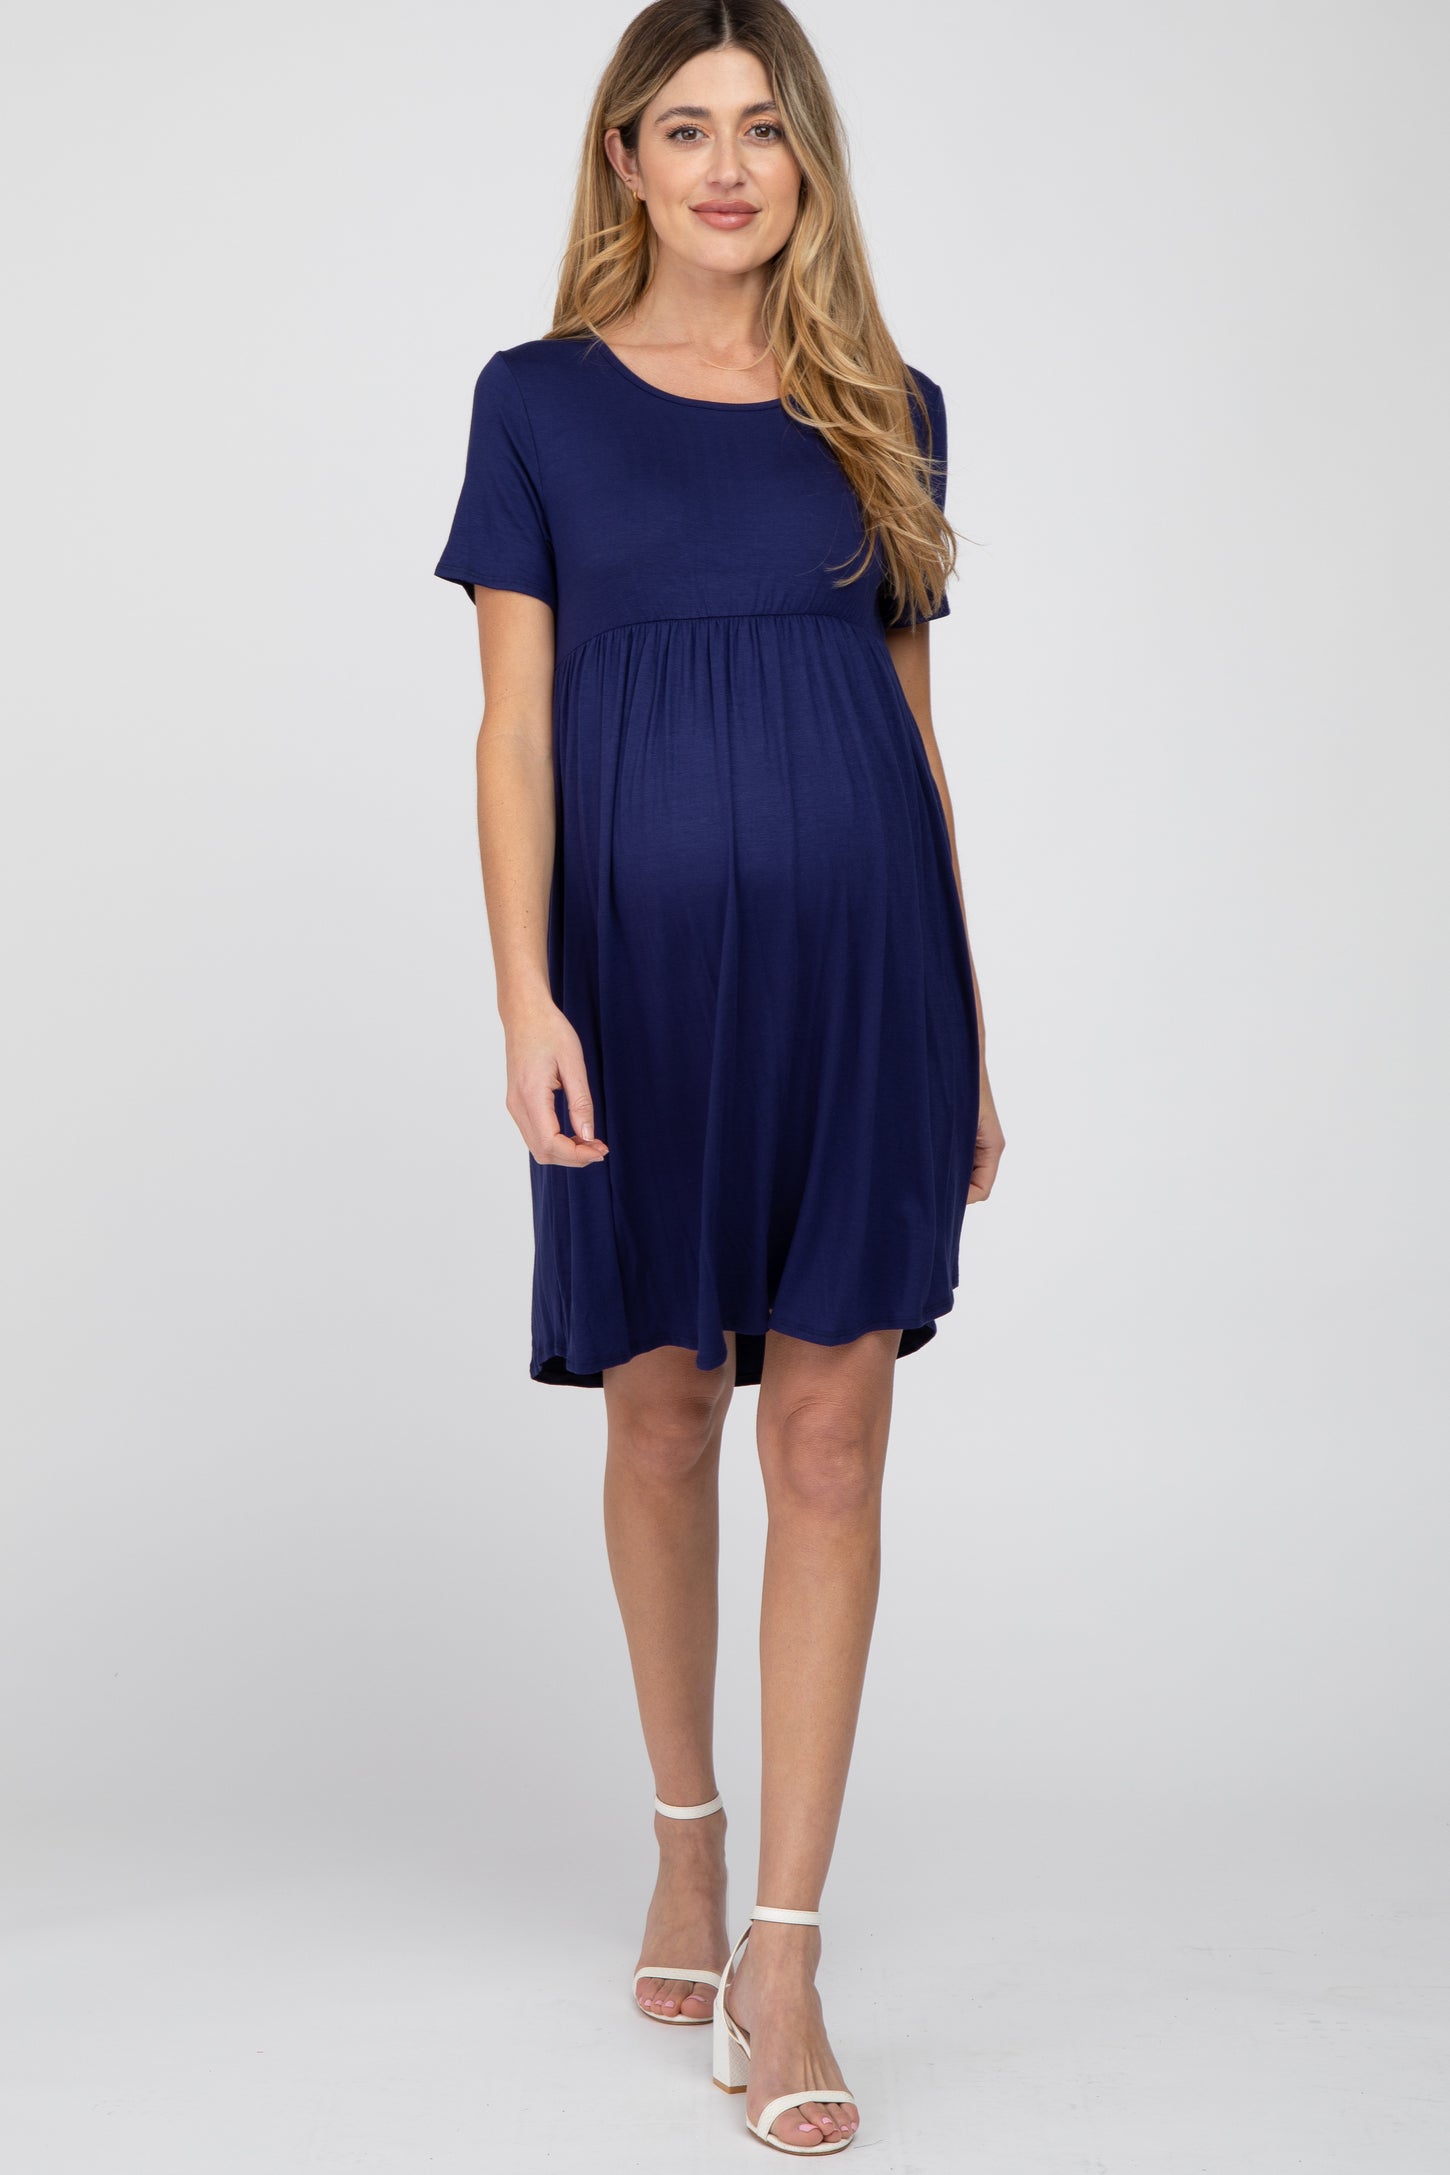 Navy Blue Babydoll Round Hem Maternity Dress – PinkBlush